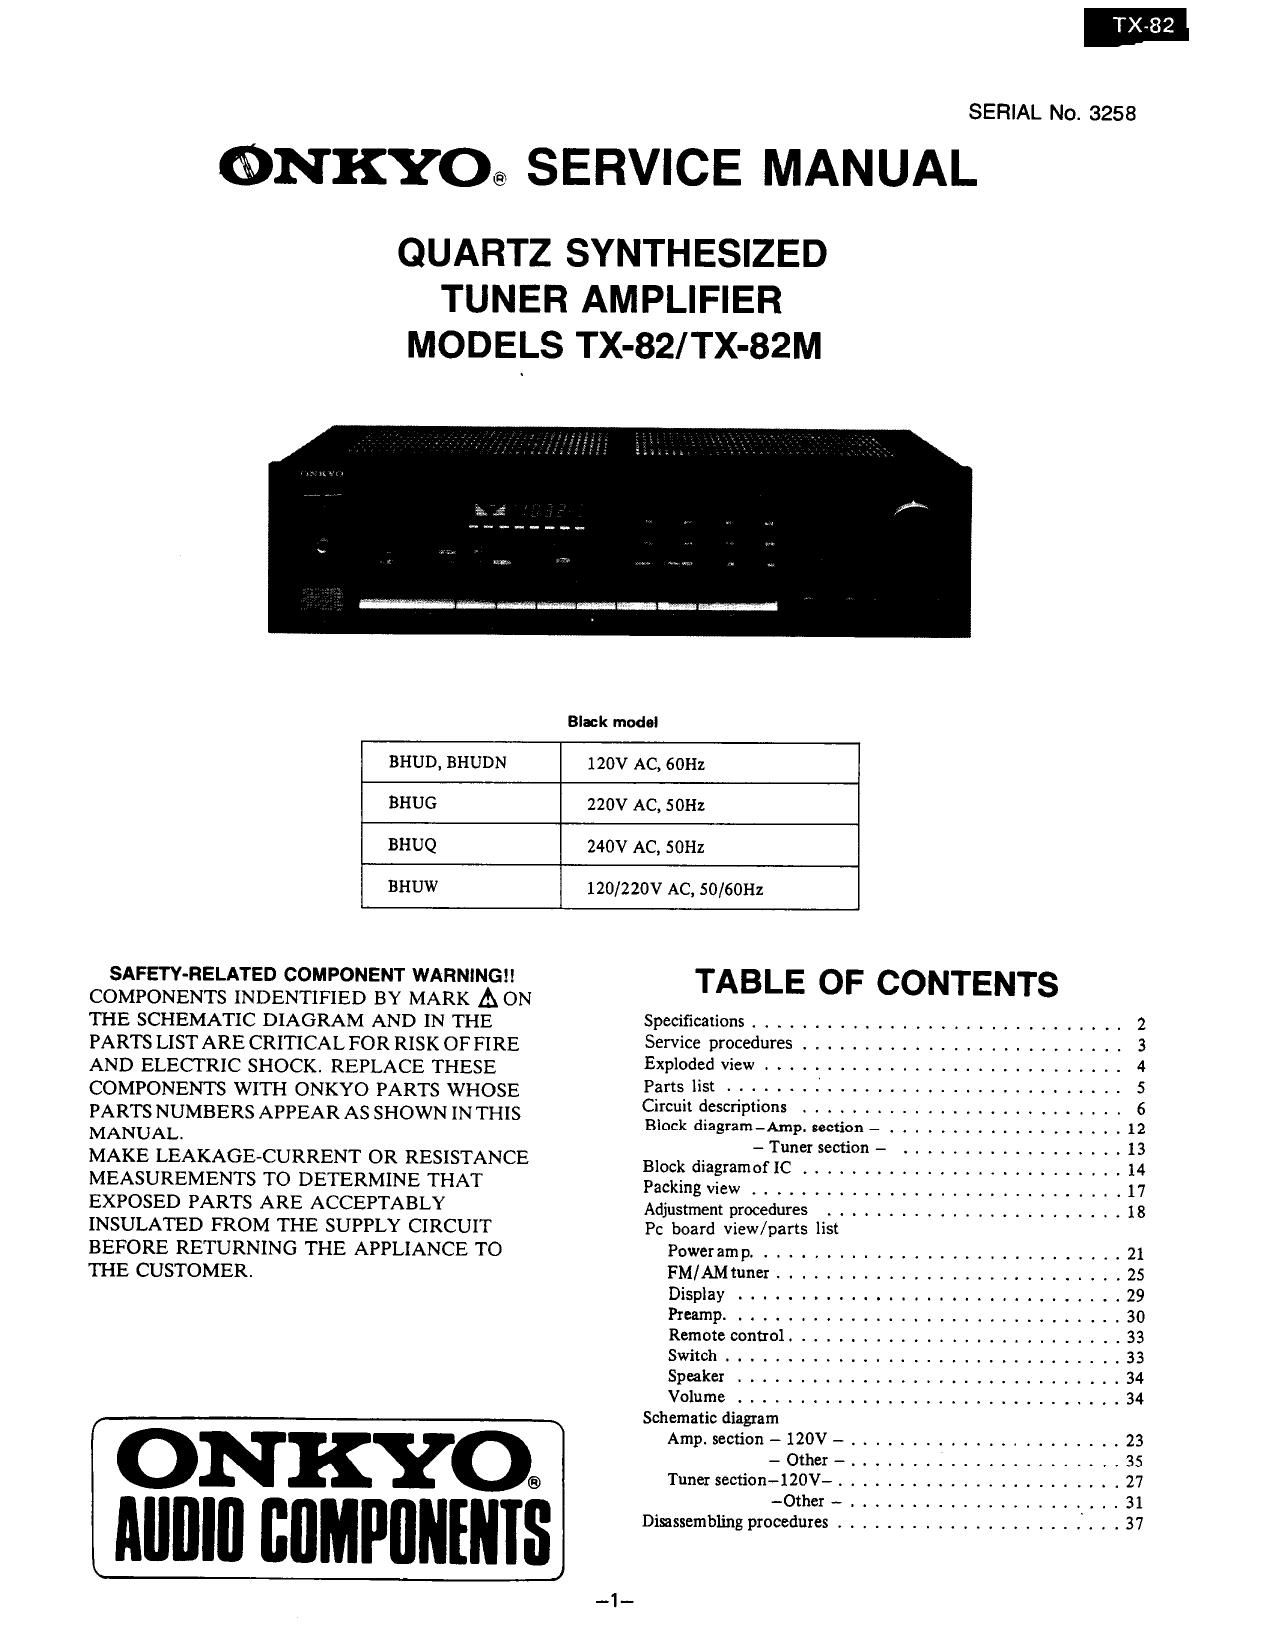 Onkyo TX 82 Service Manual